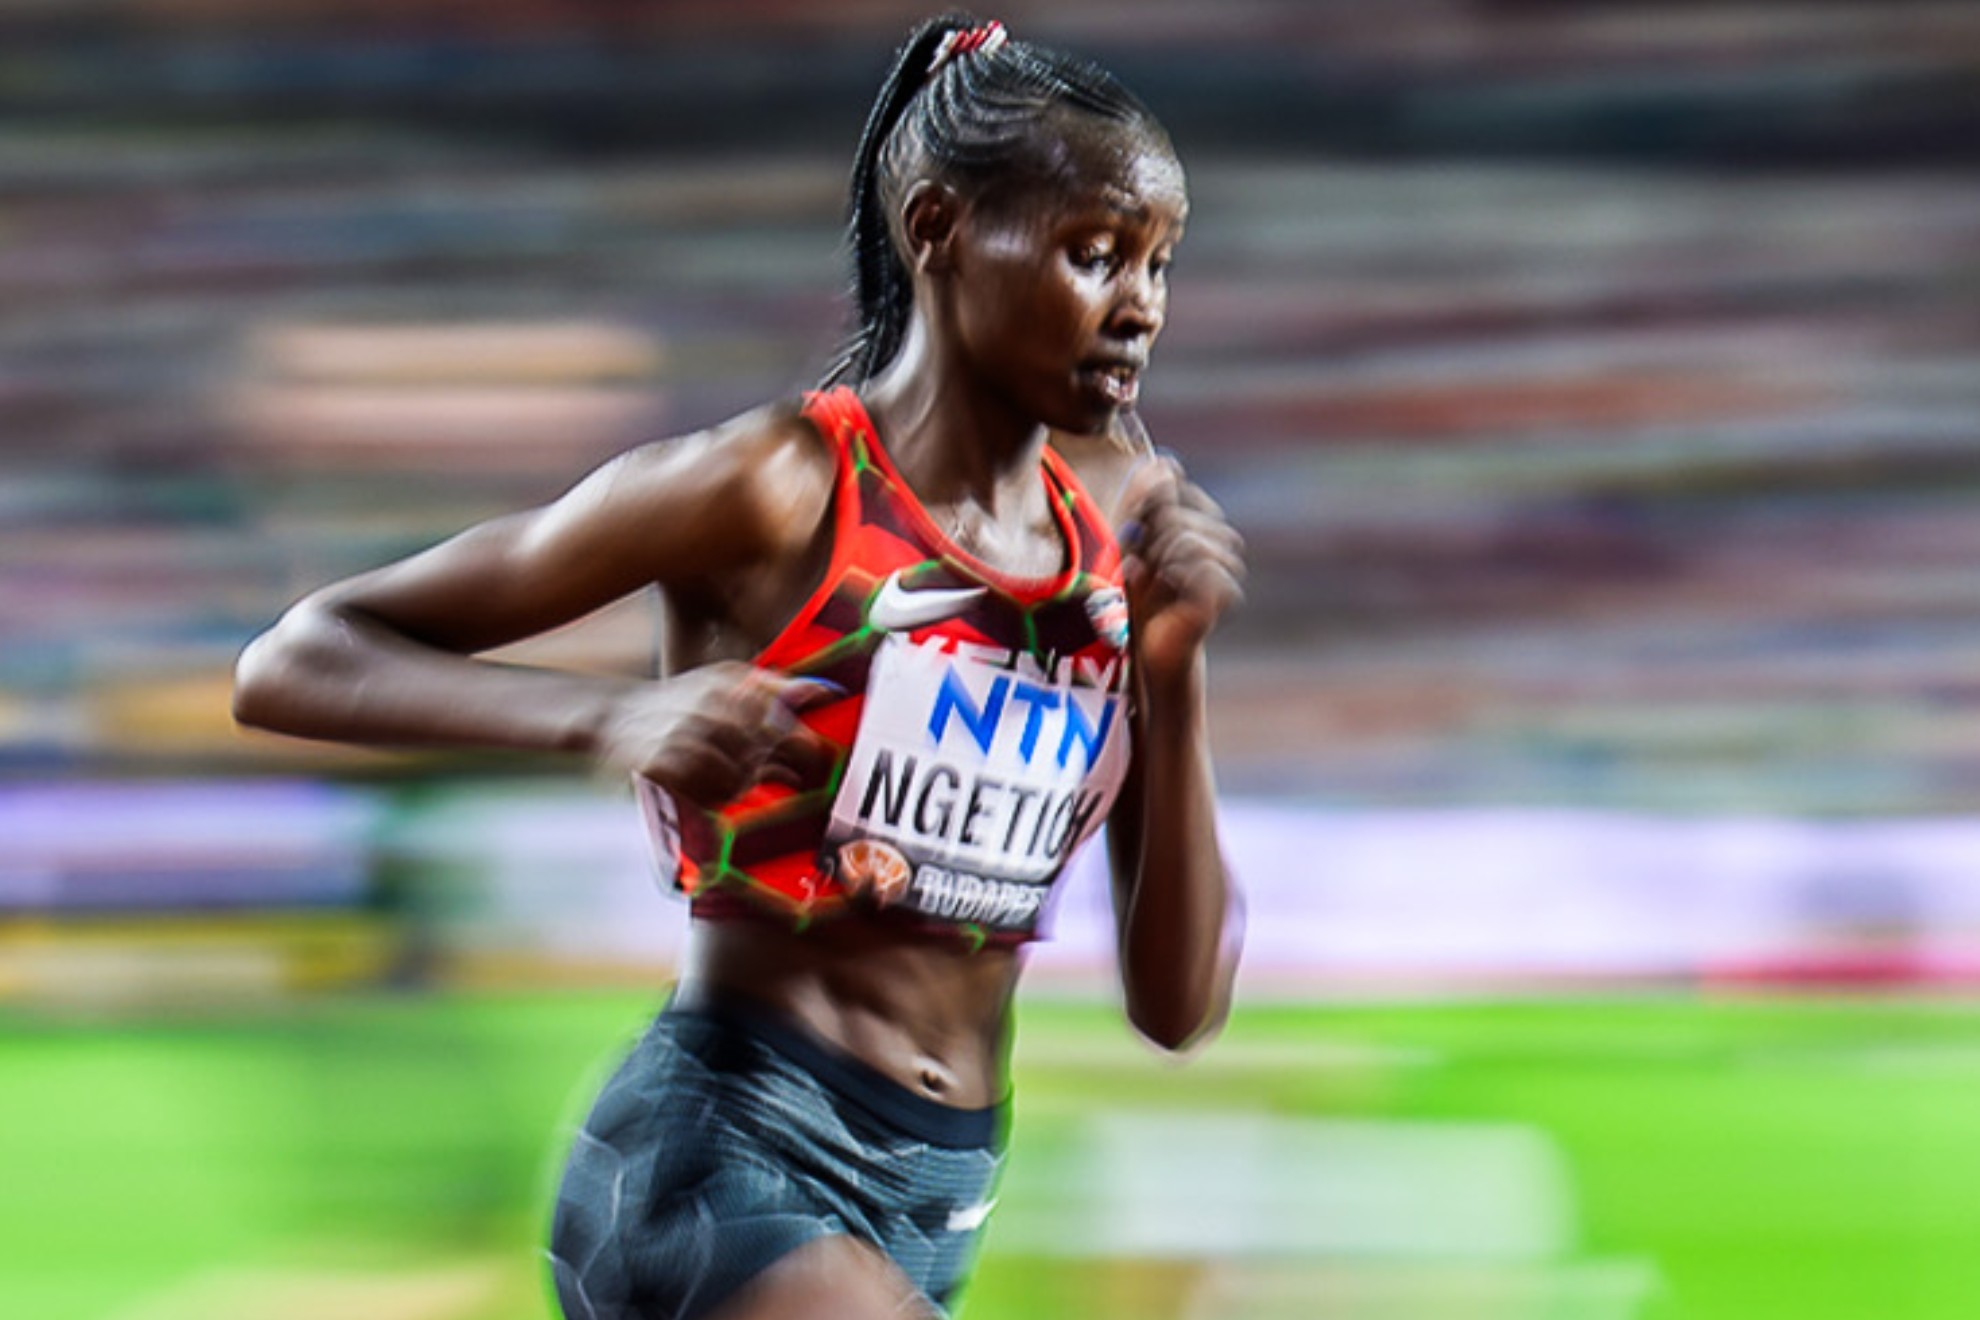 La keniana Agnes Ngetich destroza el récord mundial de 10K sólo para mujeres